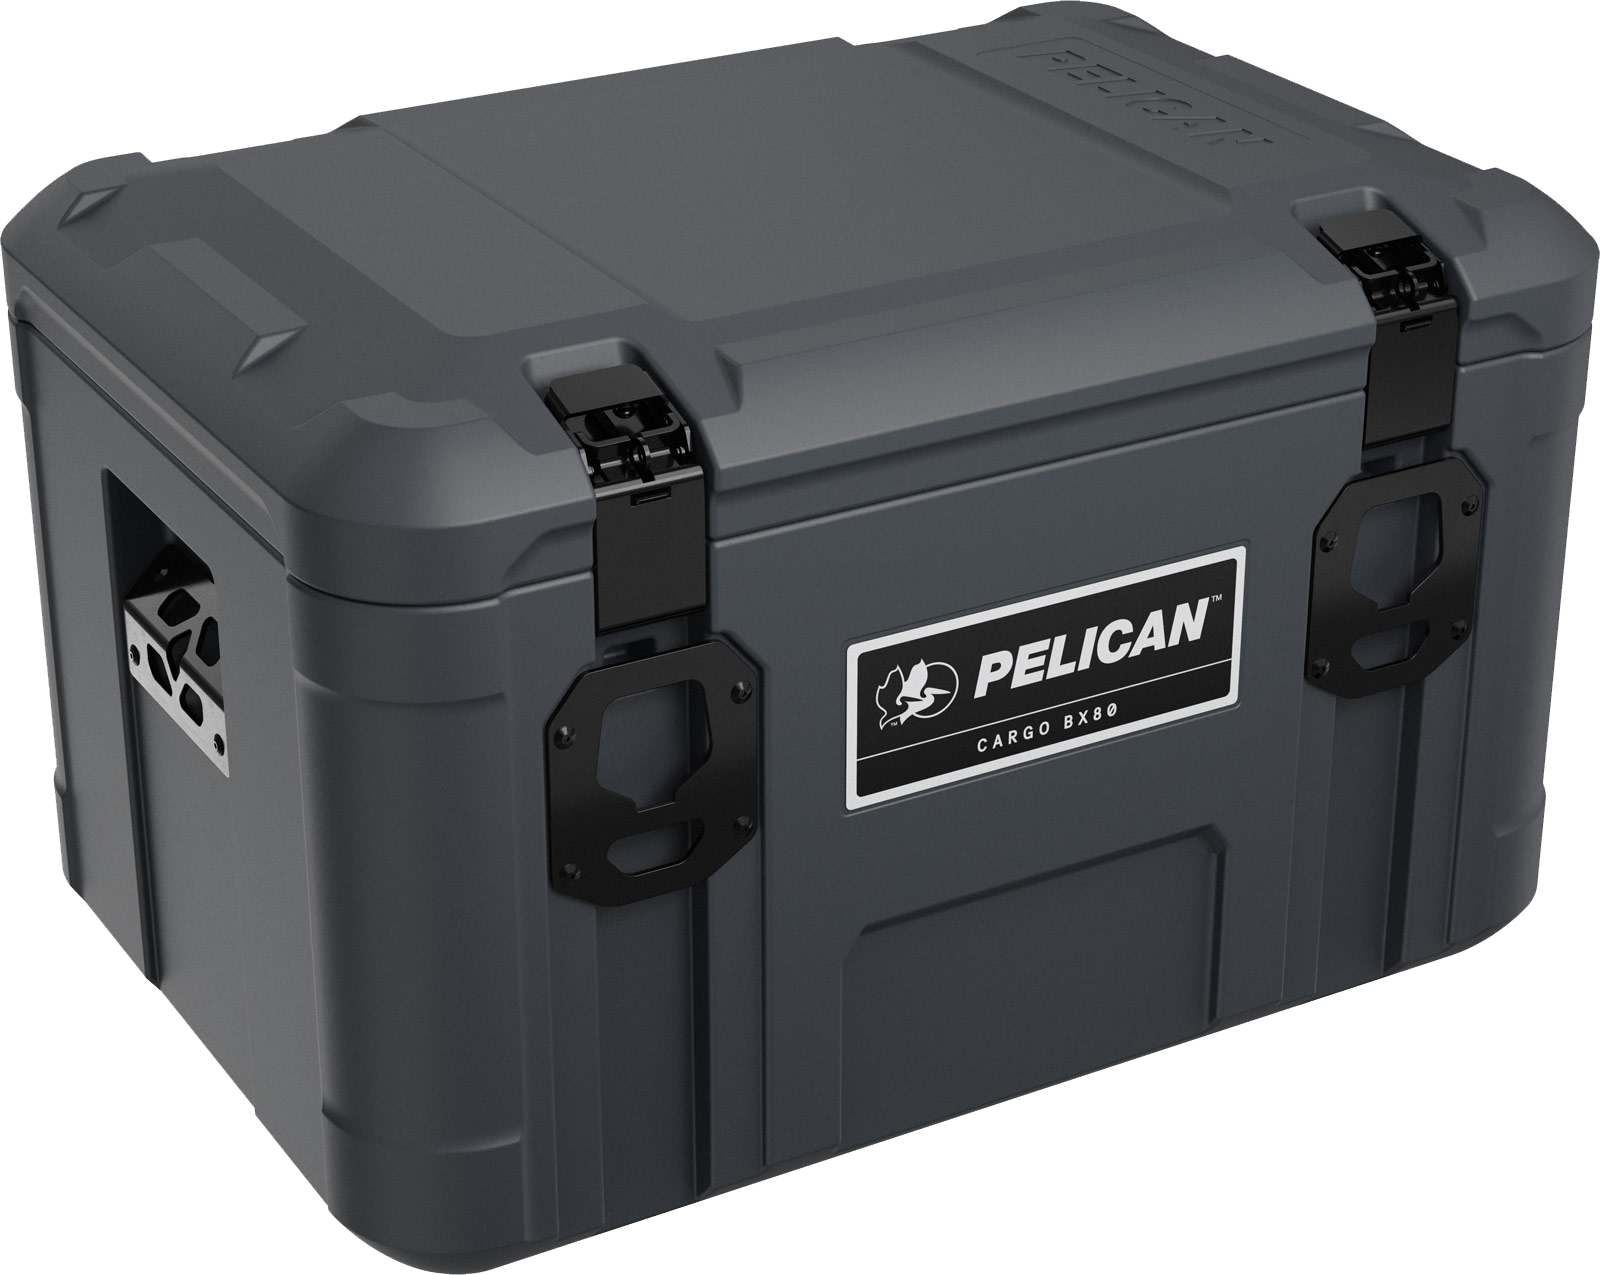 Pelican BX80 Cargo Case – Overland Addict